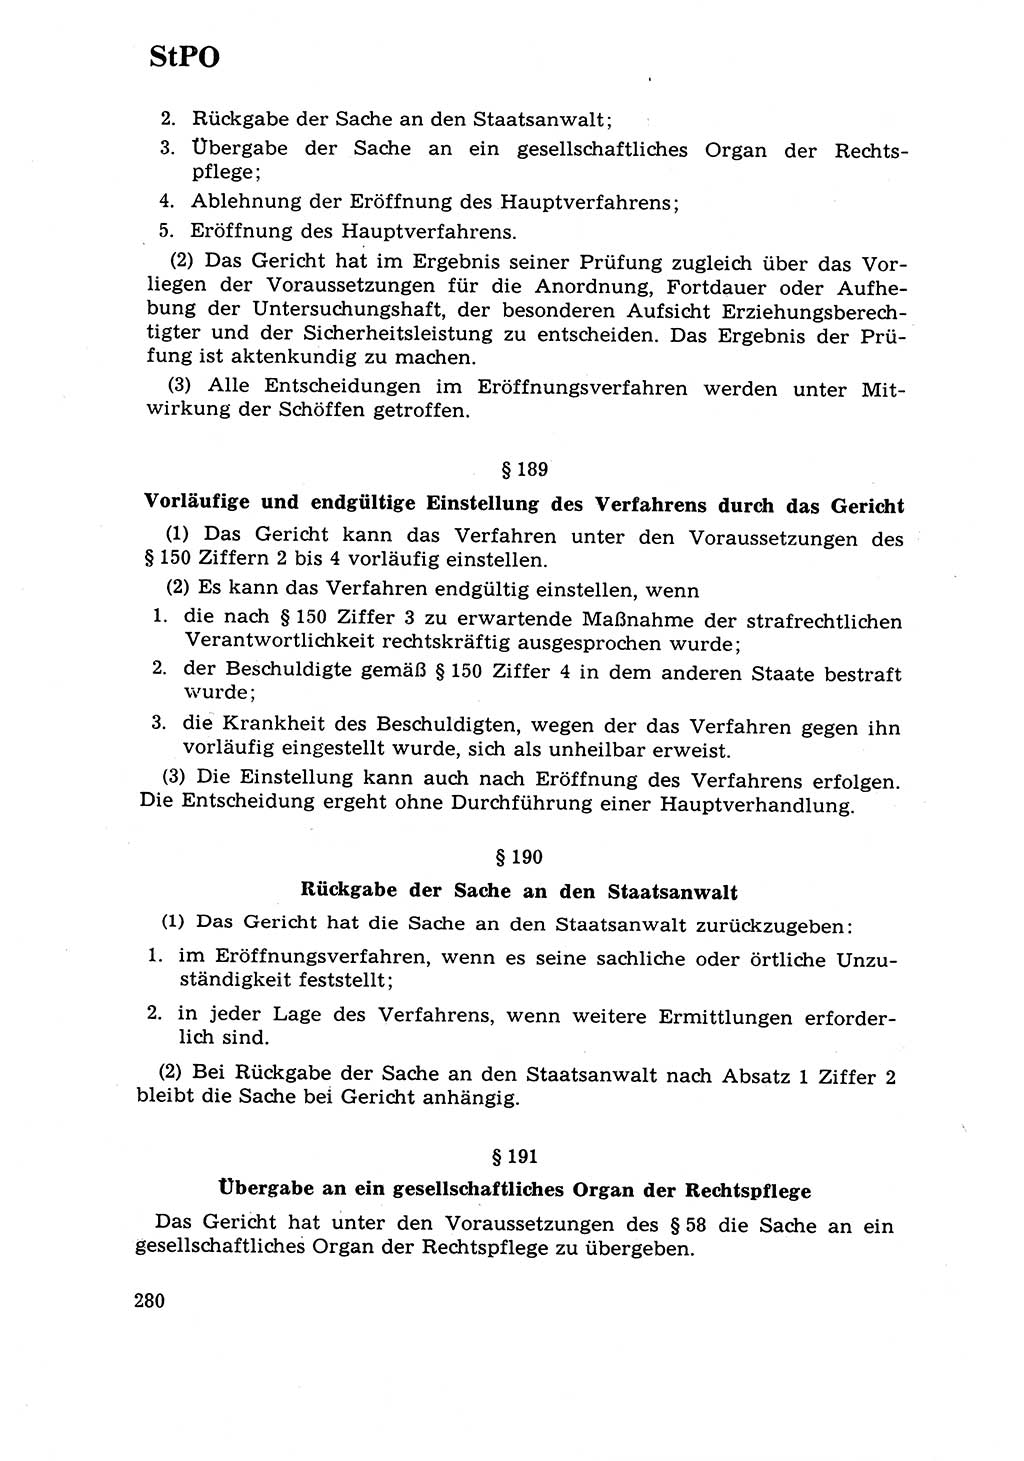 Strafrecht [Deutsche Demokratische Republik (DDR)] 1968, Seite 280 (Strafr. DDR 1968, S. 280)